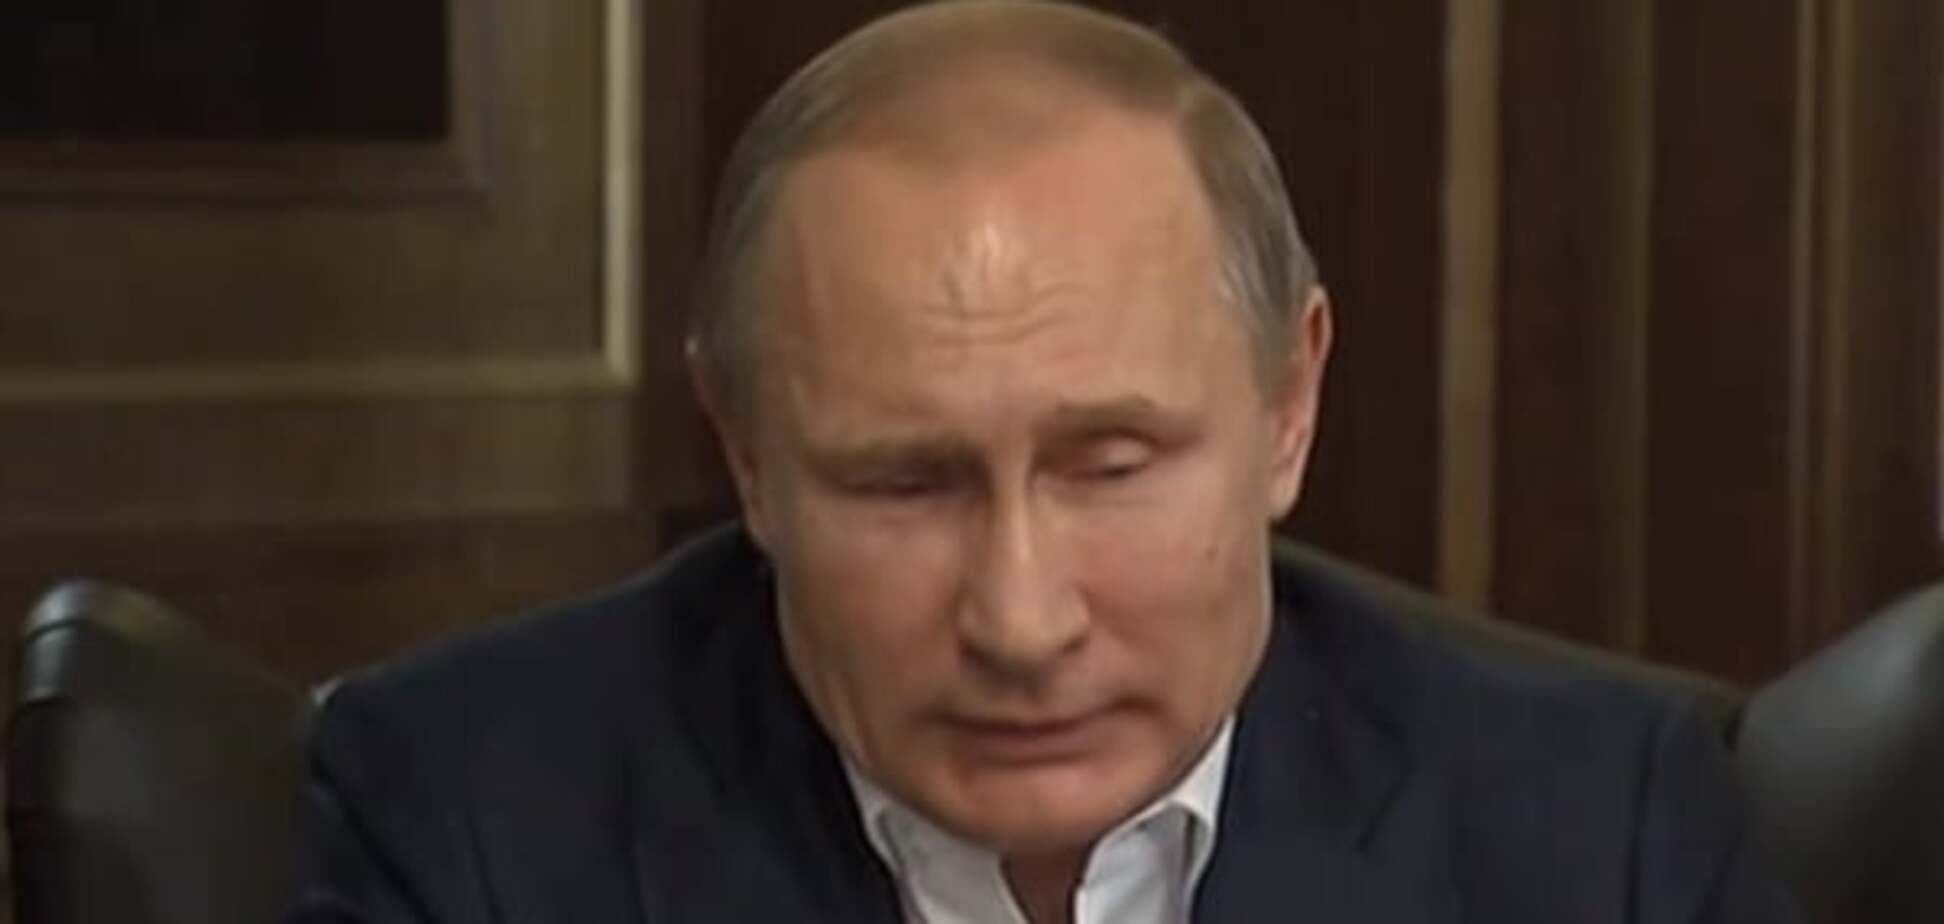 Невпевненість і слабкість: психолог прокоментував поведінку Путіна під час інтерв'ю Bild